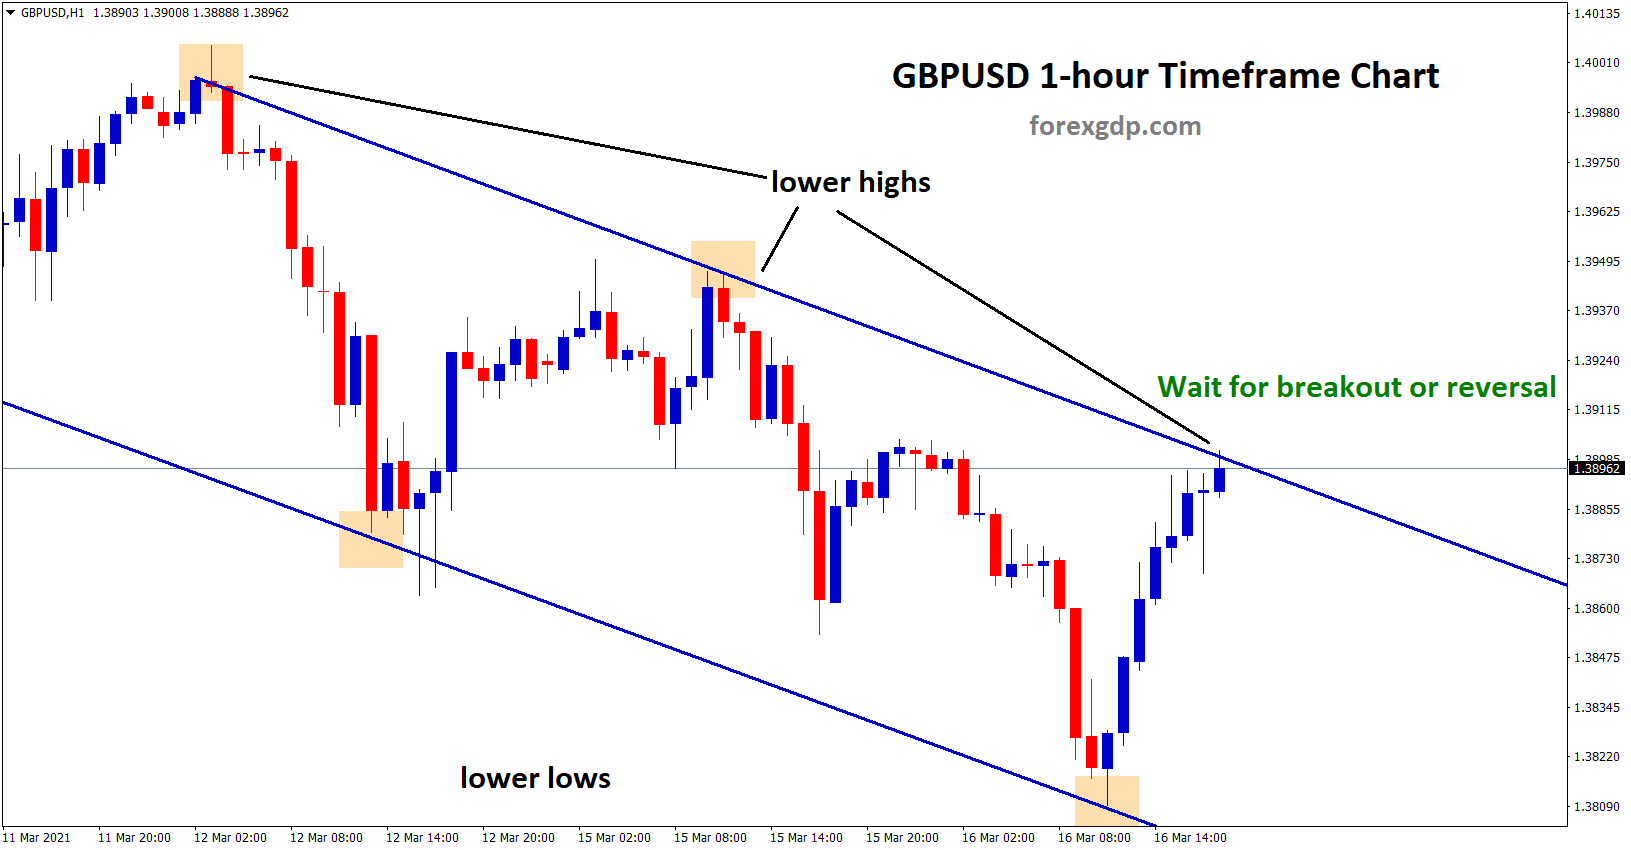 gbpusd breakout or reversal scenario